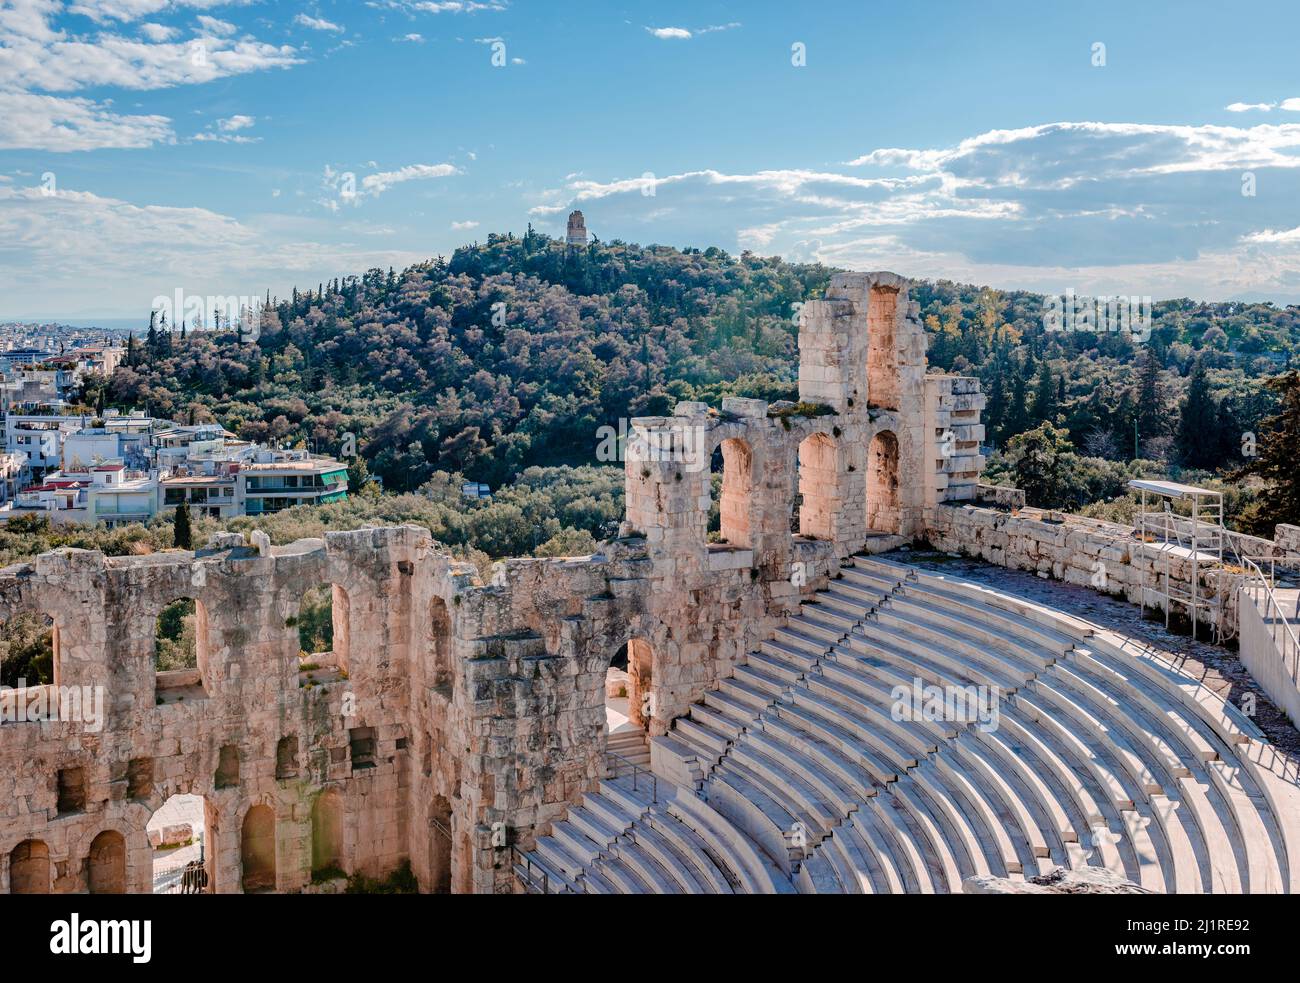 L'Odeon di Erodes Atticus, situato sul versante sud-ovest dell'Acropoli e il Colle Filopappos con il monumento Filopappos in cima. Atene, att Foto Stock